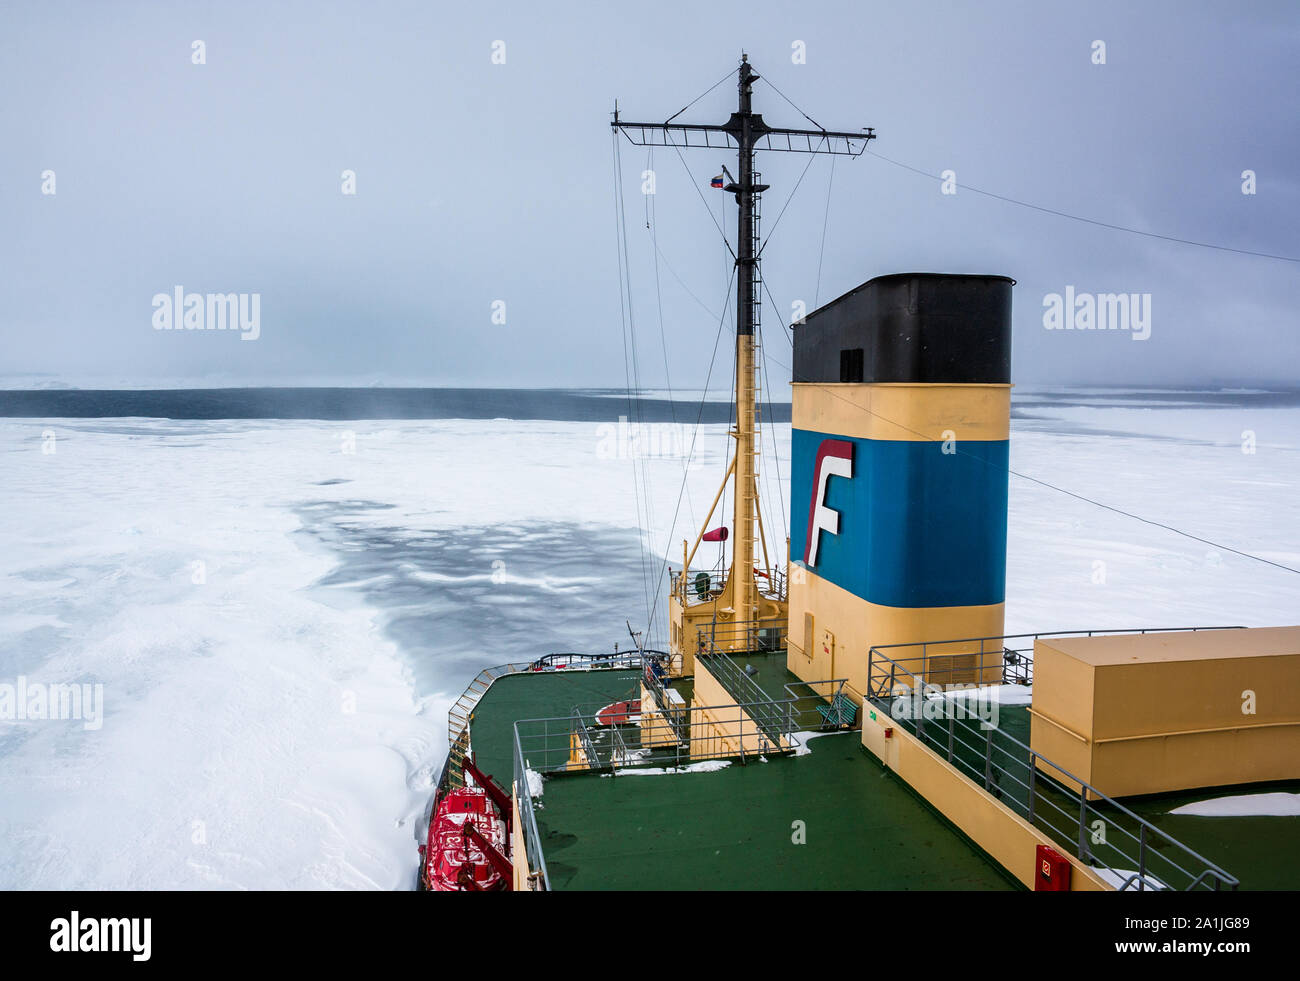 Brise-glace Kapitan Khlebnikov stationné dans la glace de mer à Snow Hill Island, mer de Weddell, l'Antarctique Banque D'Images